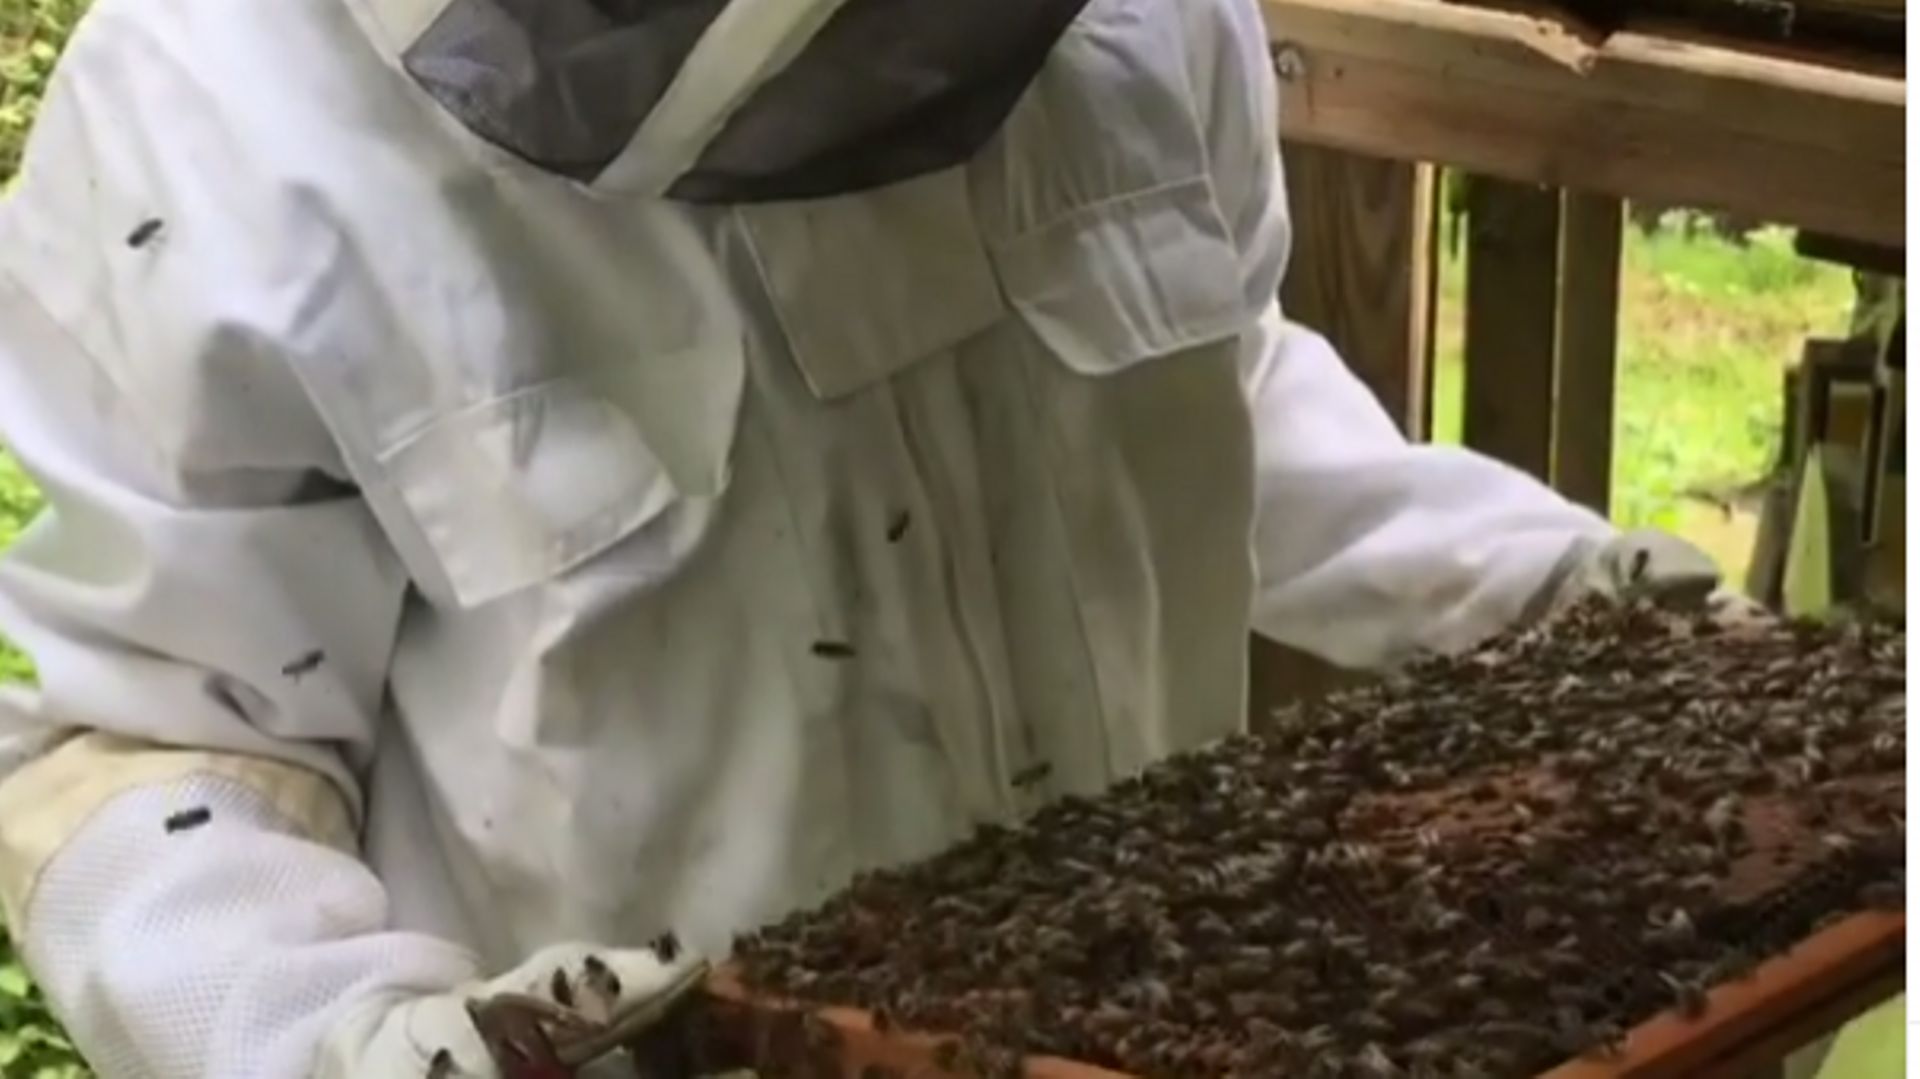 12% des espèces d'abeilles de notre territoire ont déjà disparu